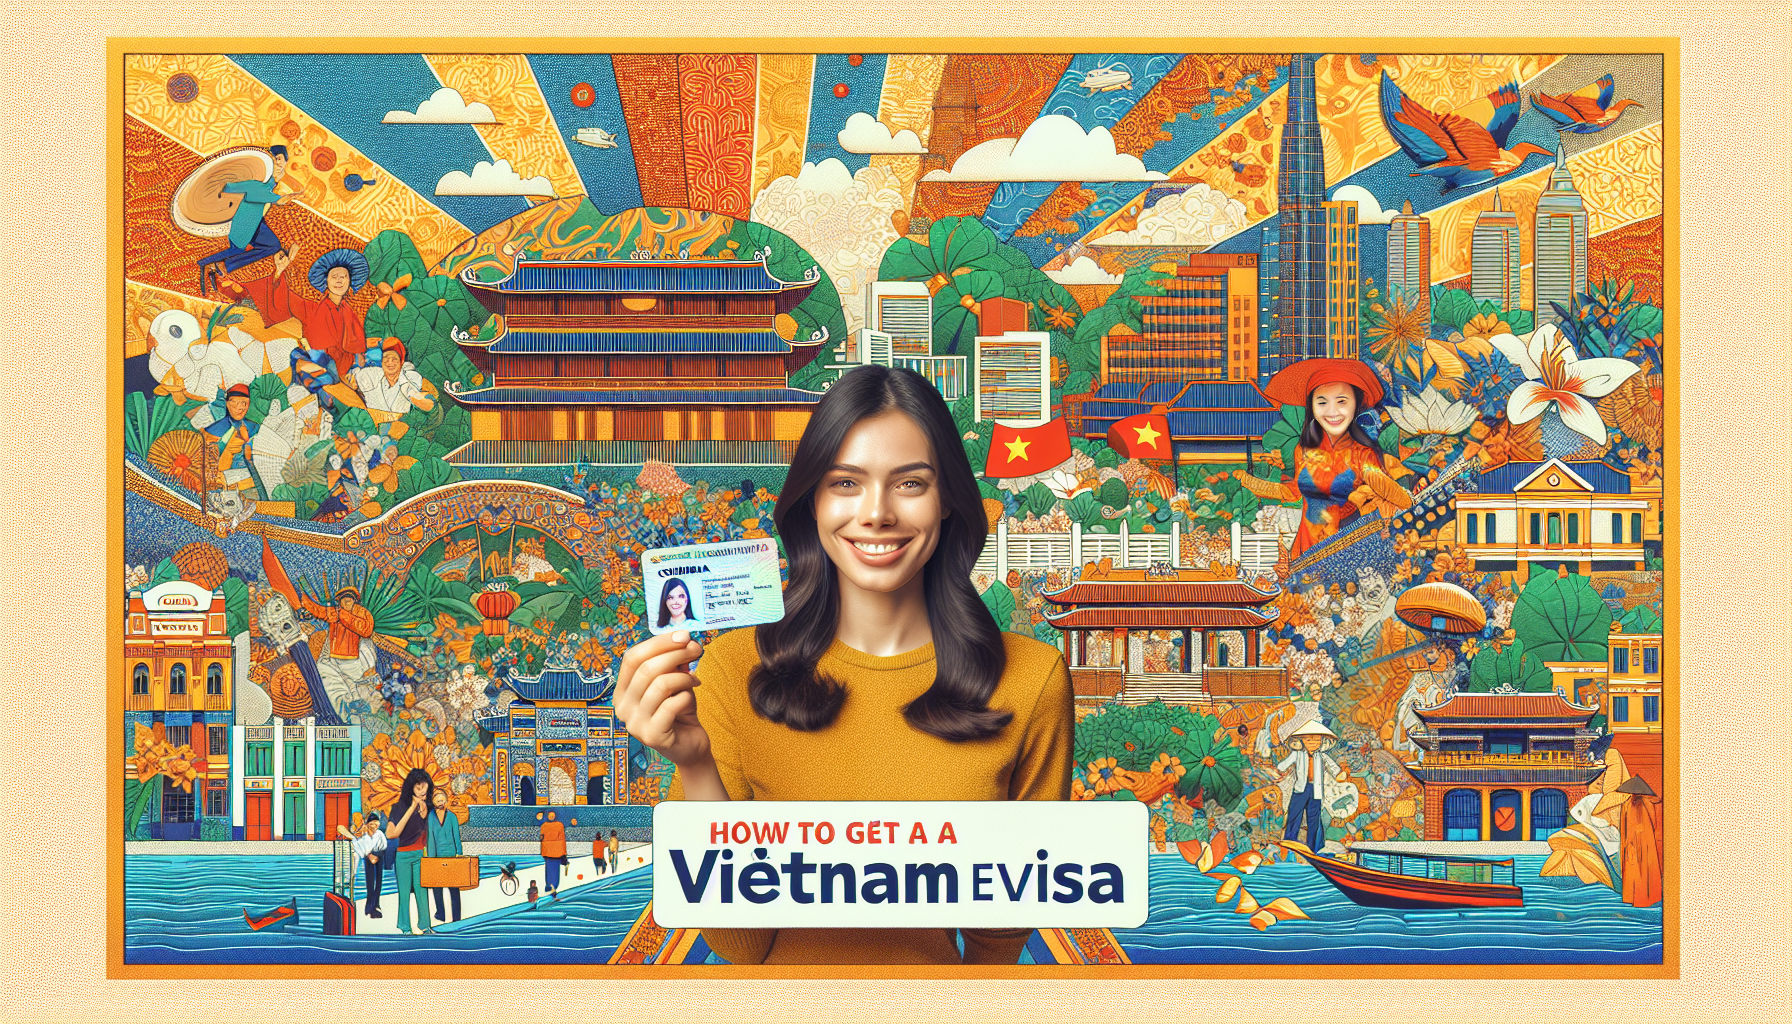 Vietnam Evisa for Citizens from Bogota